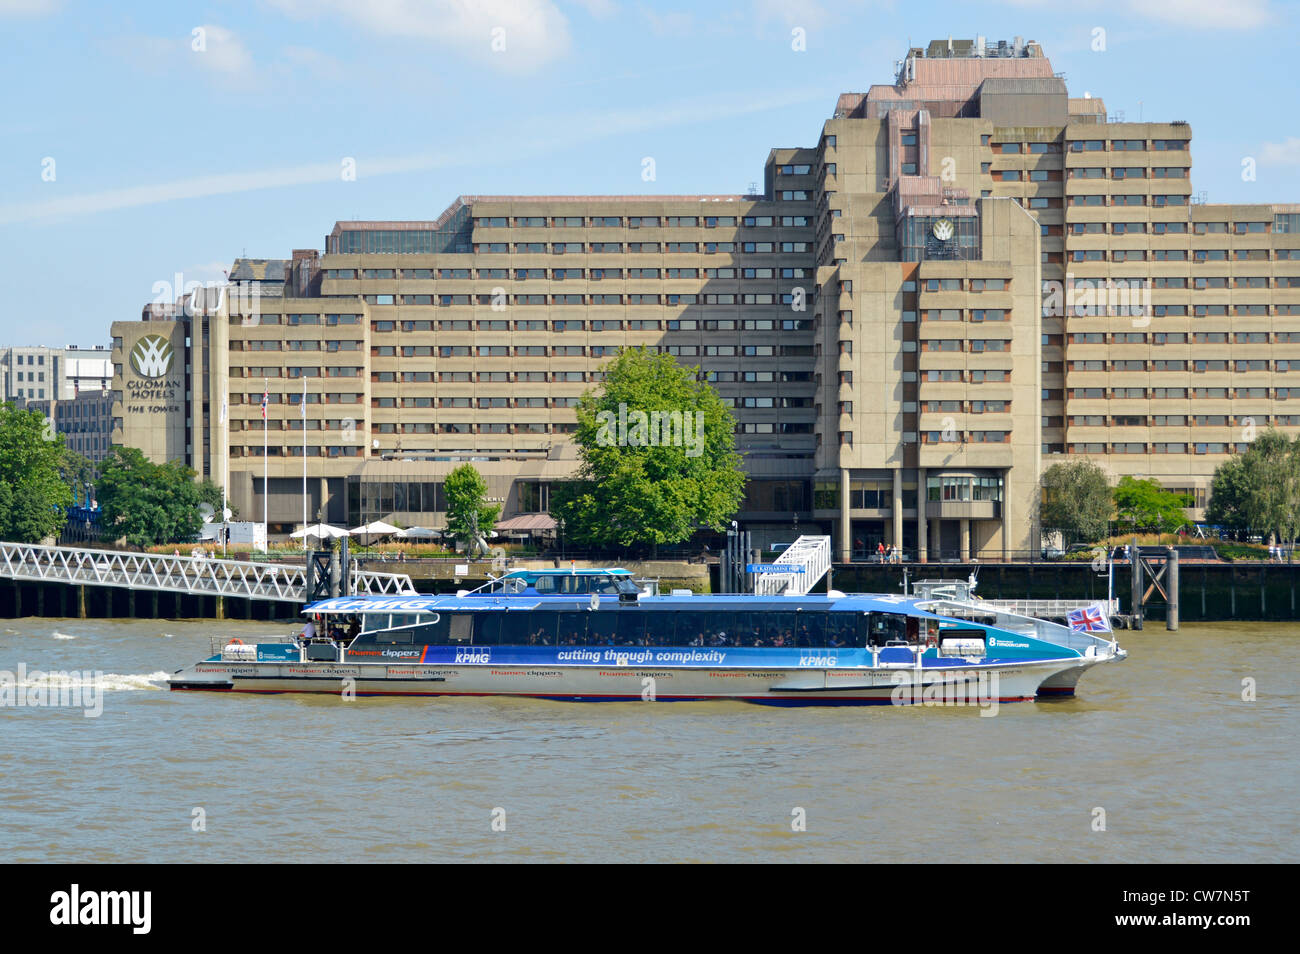 Pubblicità di sponsorizzazione KMPG sul catamarano Thames Clipper che passa da St Katharine Pier & The Guoman Tower Hotel Londra Inghilterra Regno Unito Foto Stock